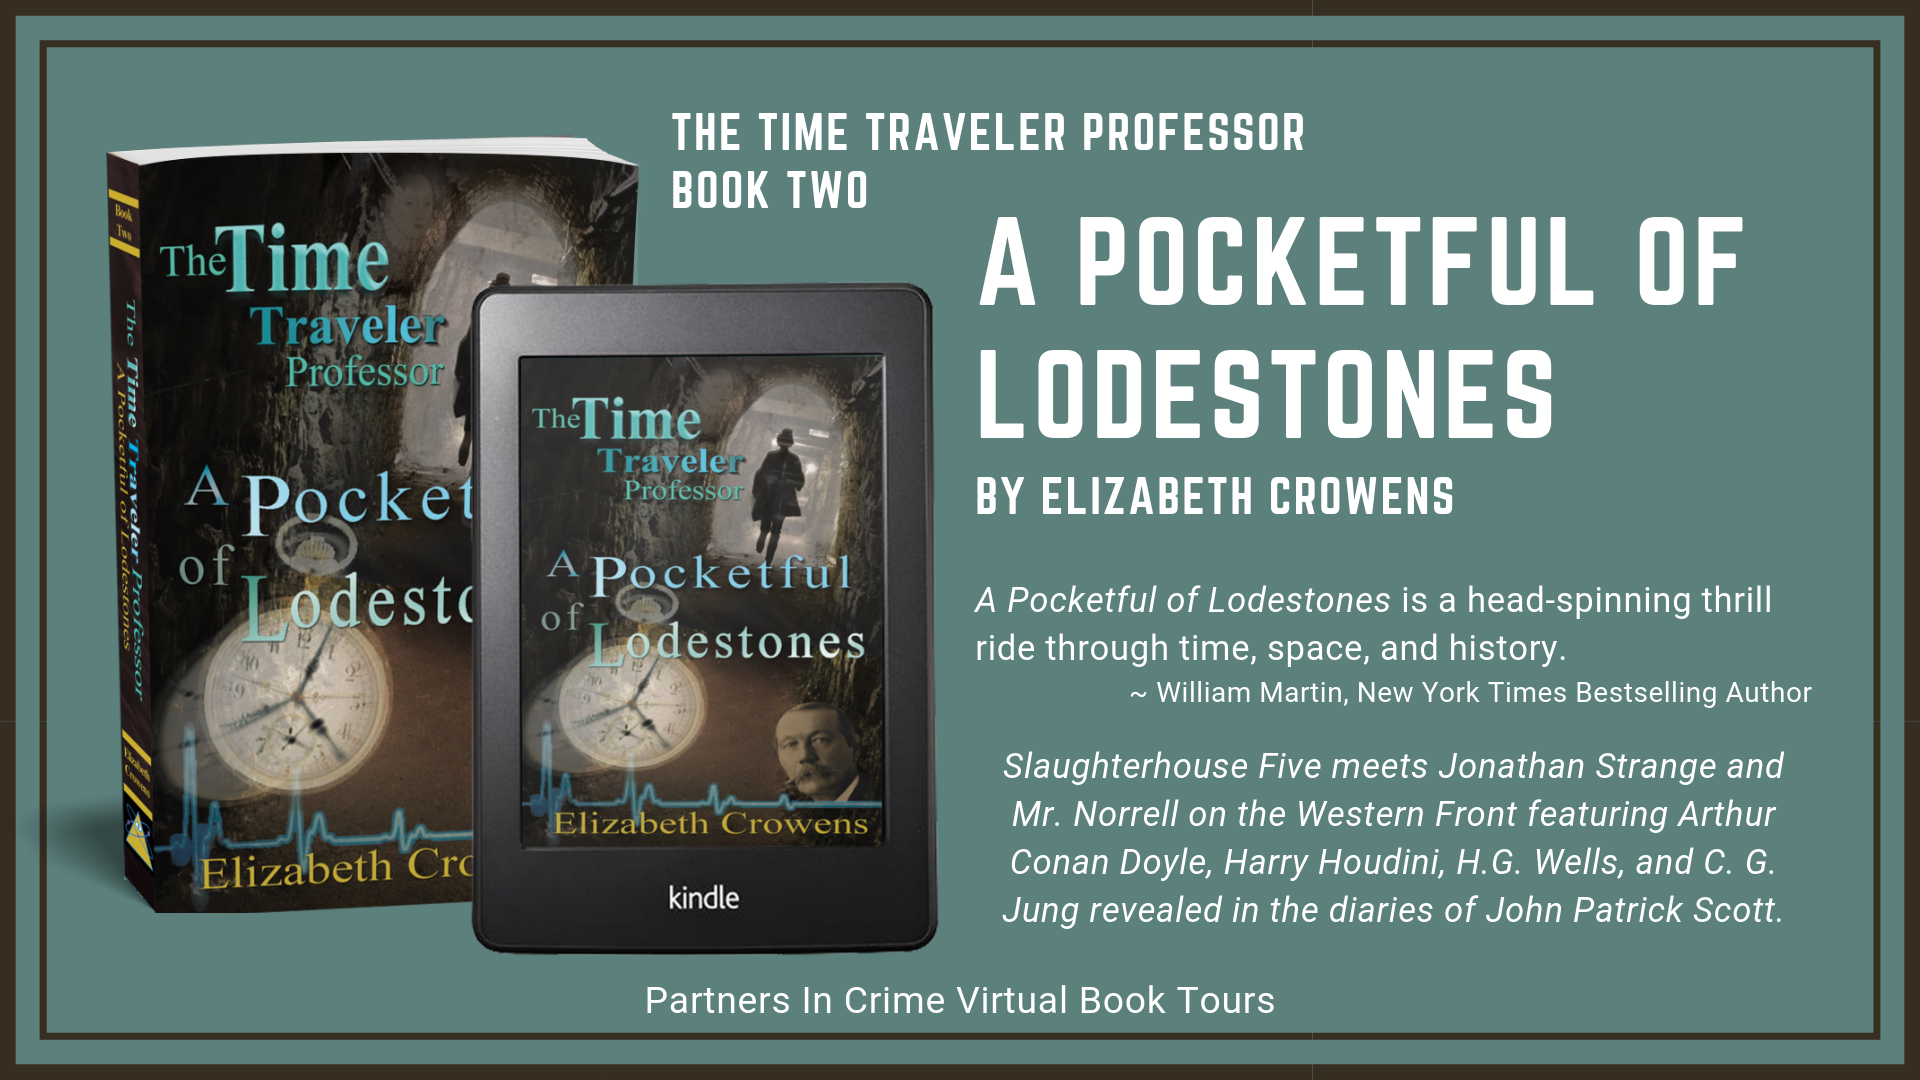 A Pocketful Of Lodestones by Elizabeth Crowens